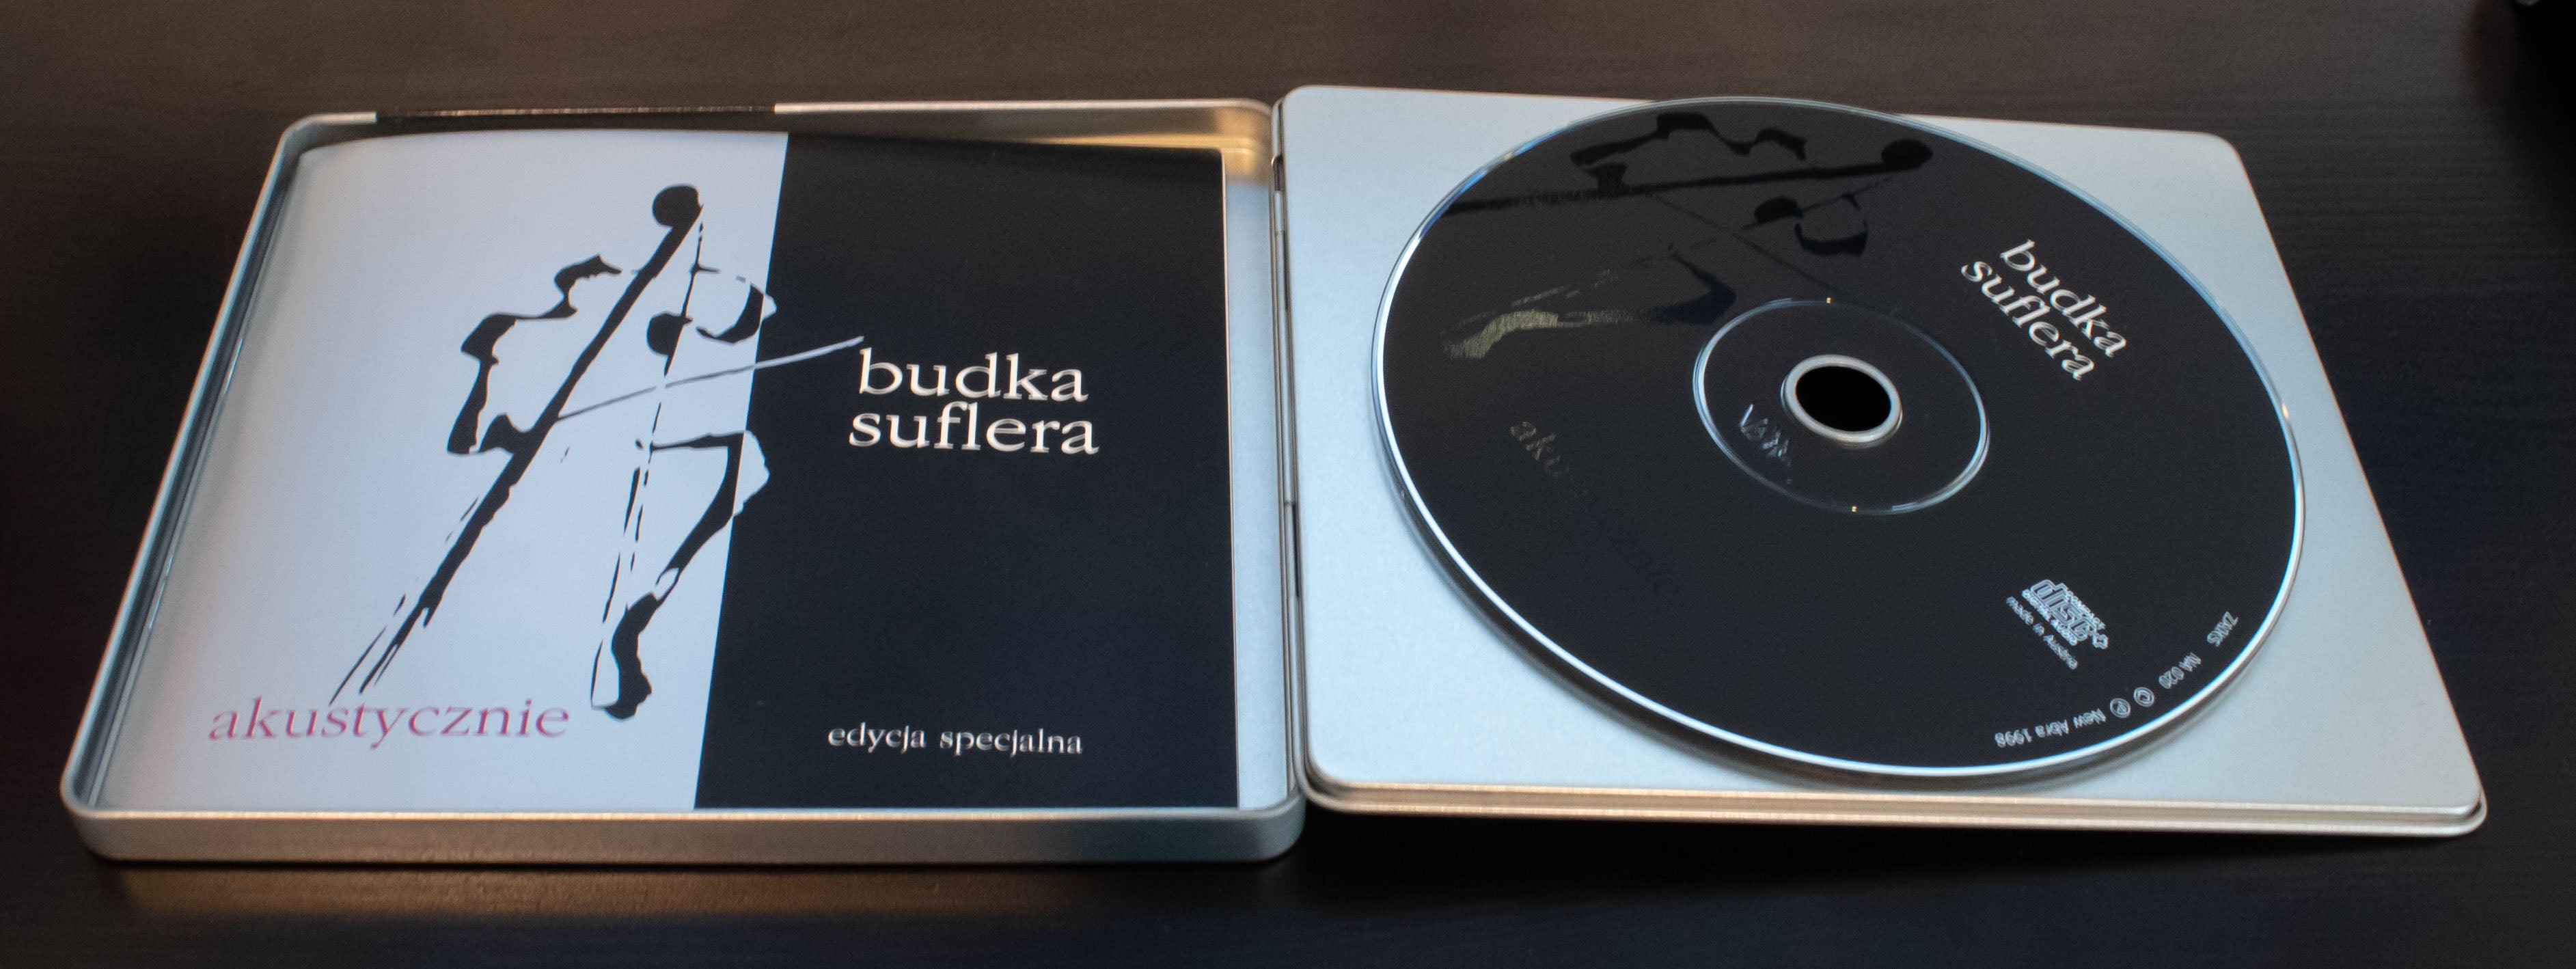 Budka Suflera - Akustycznie -  Edycja specjalna (Special Edition) CD